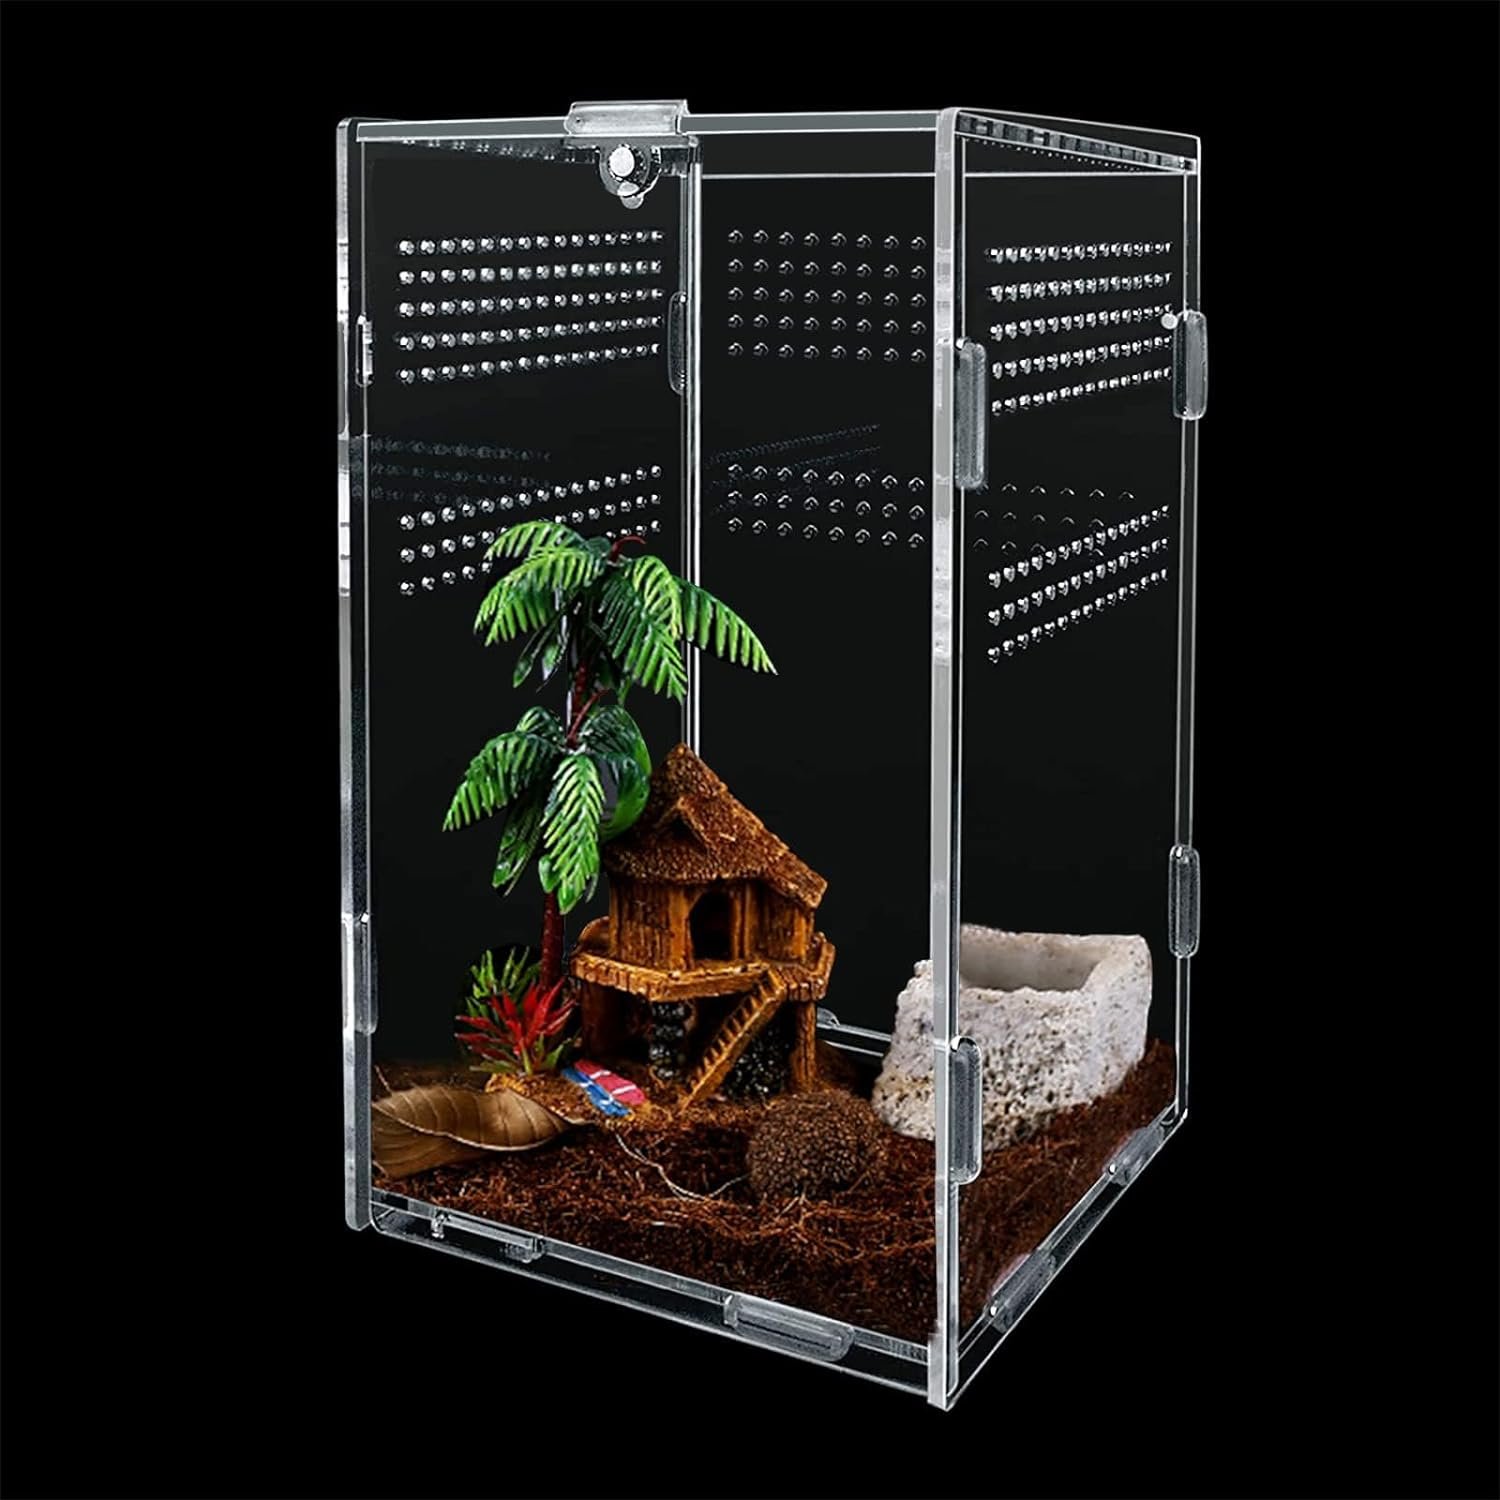 Reptile Feeding Box, Acrylic Reptile Terrarium Enclosure, Insect Breeding Case Reptiles Habitat Terrarium for Invertebrates, Mantis, Spider, Cricket, Tarantula, Lizard, Scorpion, Geckos